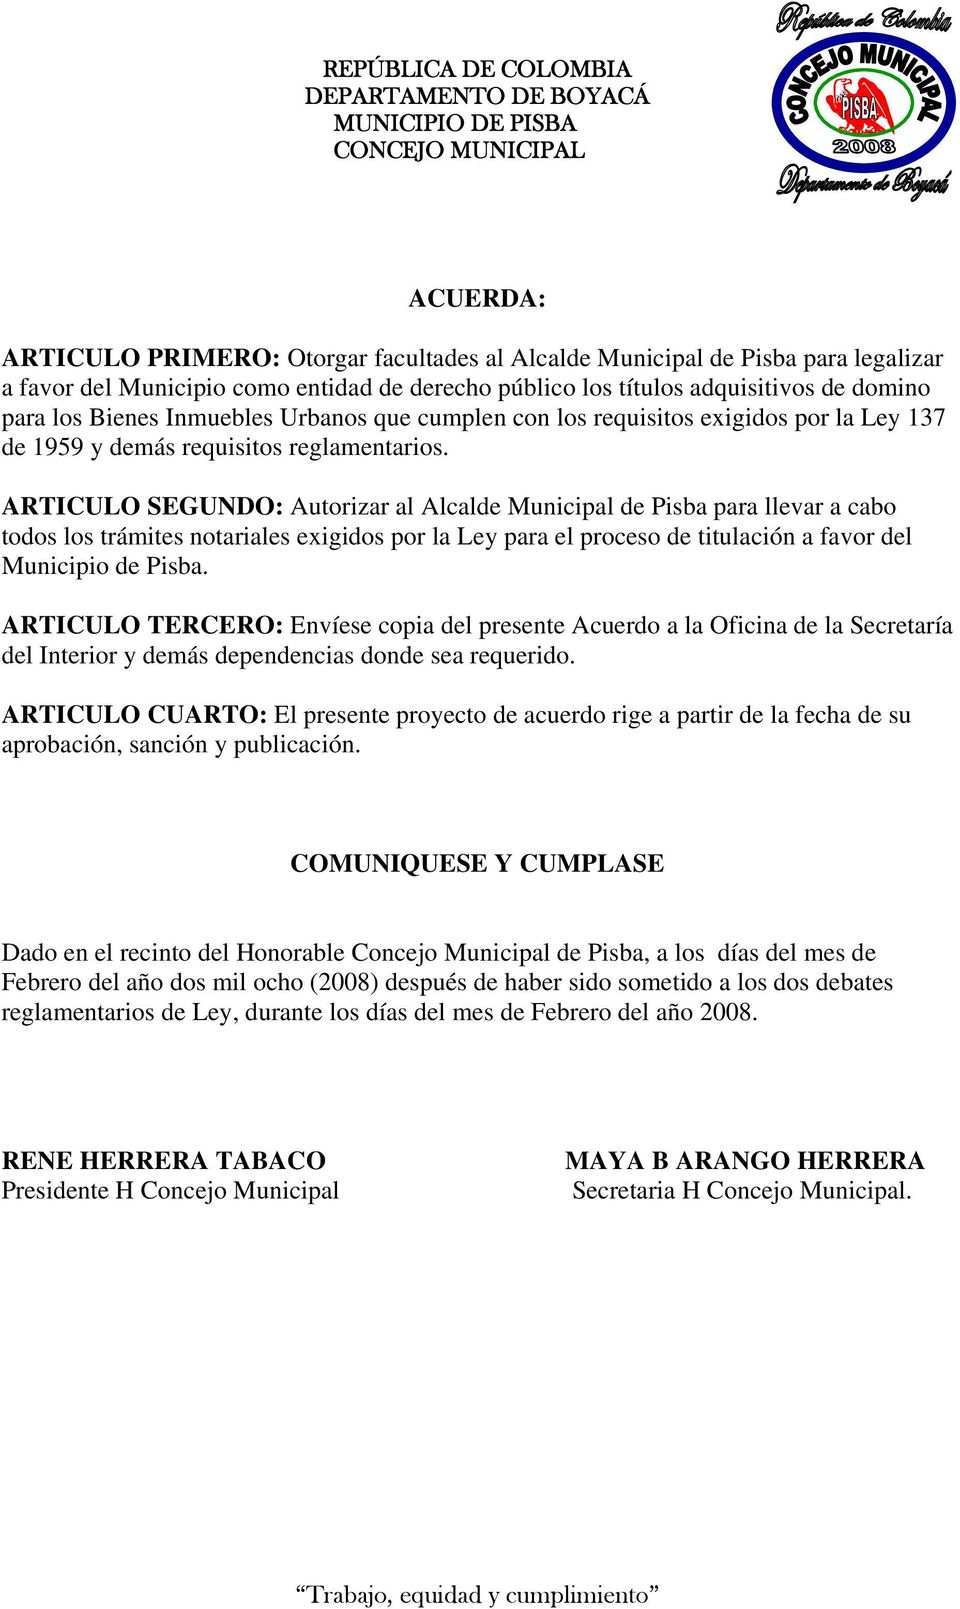 ARTICULO SEGUNDO: Autorizar al Alcalde Municipal de Pisba para llevar a cabo todos los trámites notariales exigidos por la Ley para el proceso de titulación a favor del Municipio de Pisba.